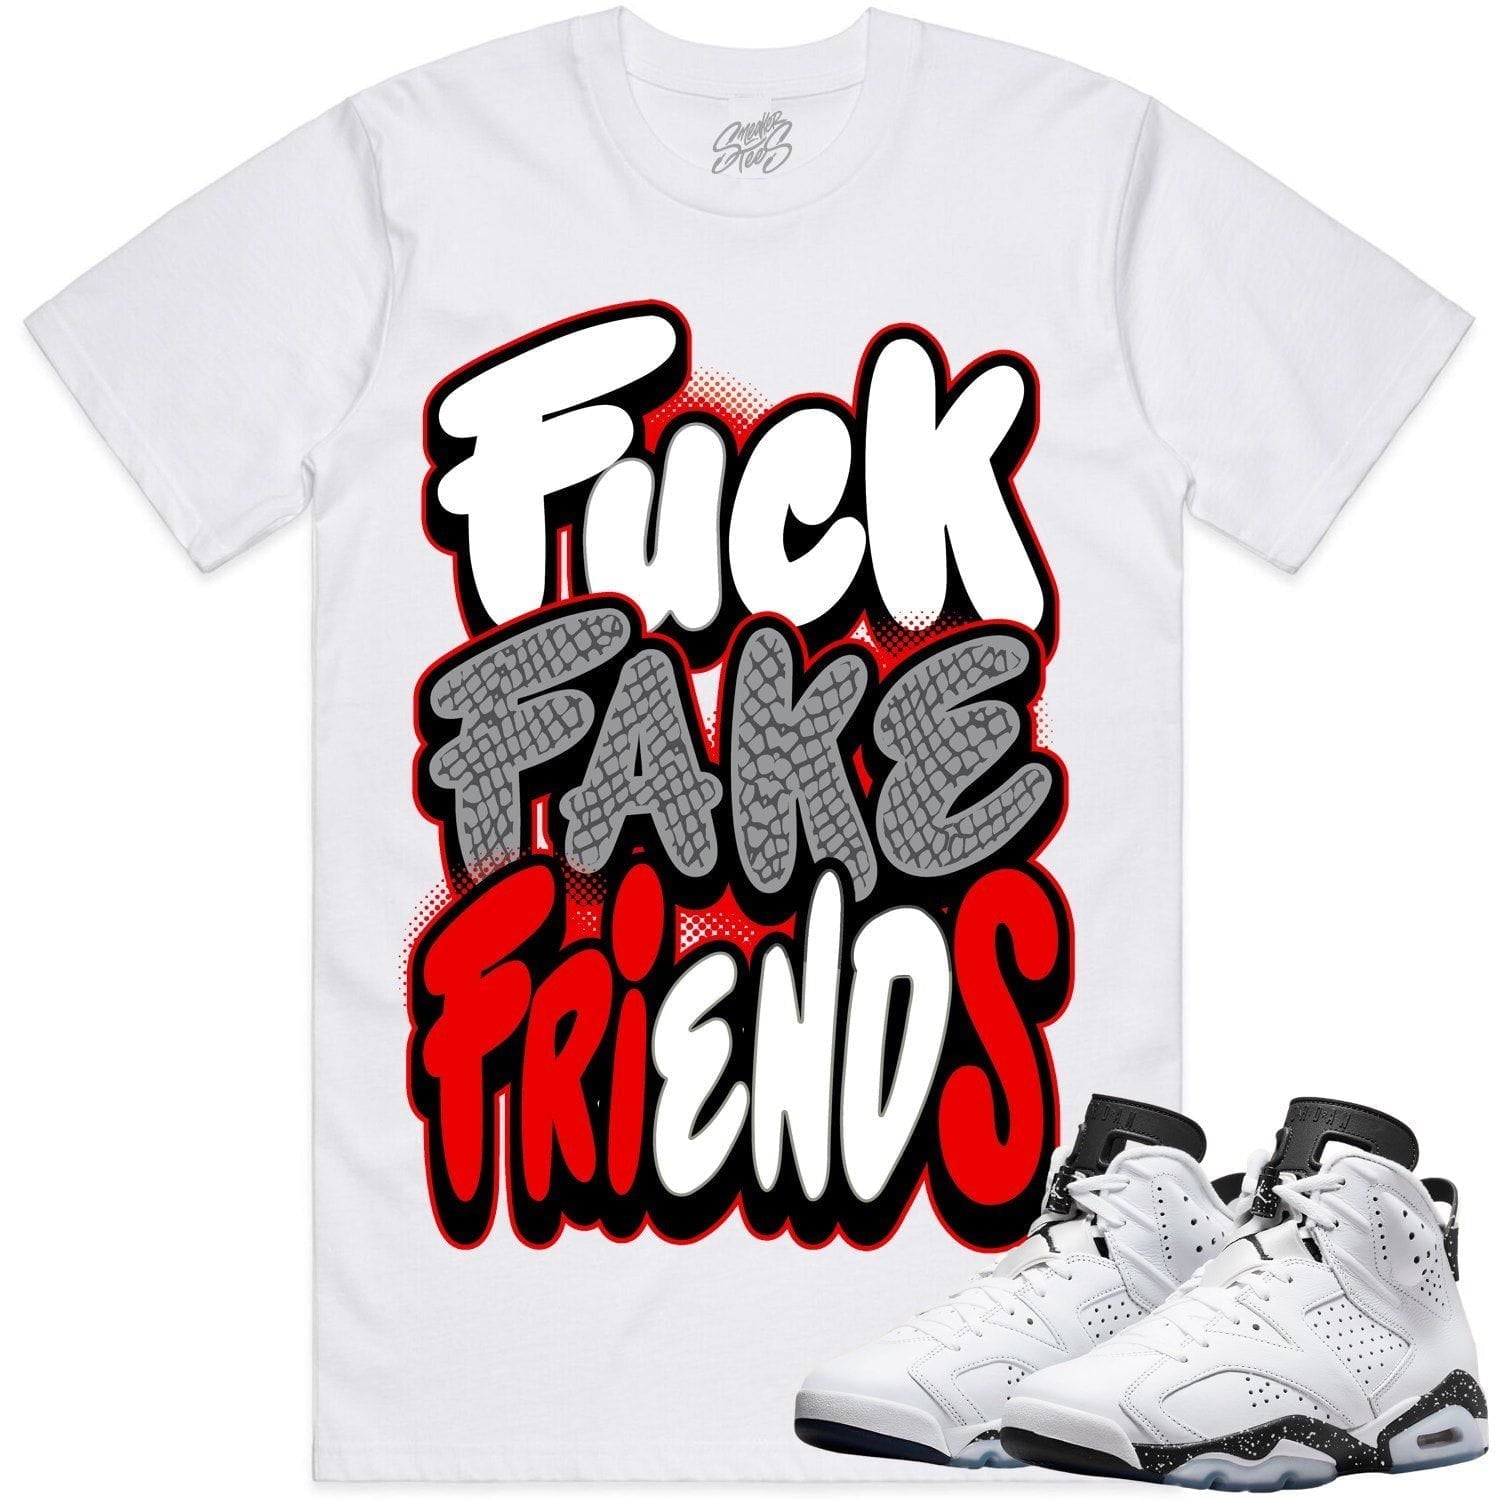 Oreo 6s Shirts - Jordan 6 Reverse Oreo 6s Sneaker Tees - FFF